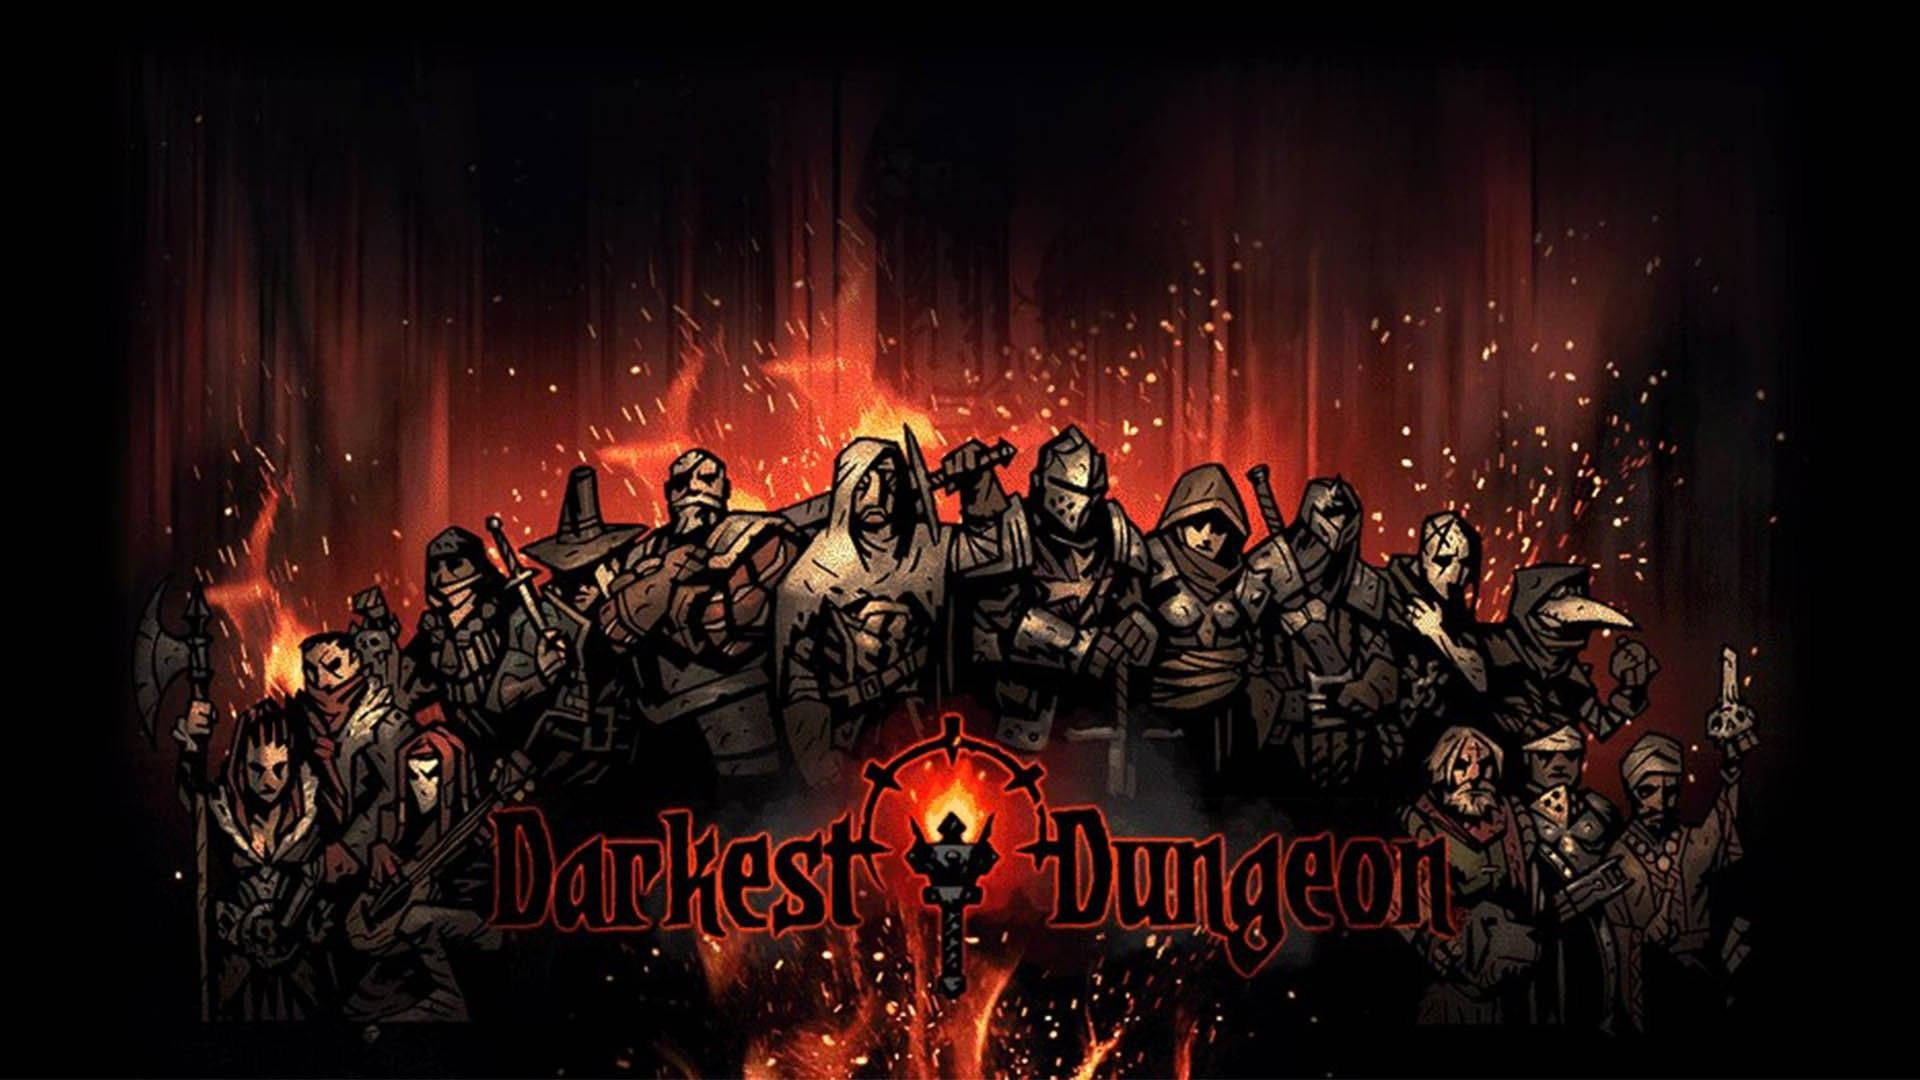 Explore the dangerous dungeons of Darkest Dungeon Wallpaper